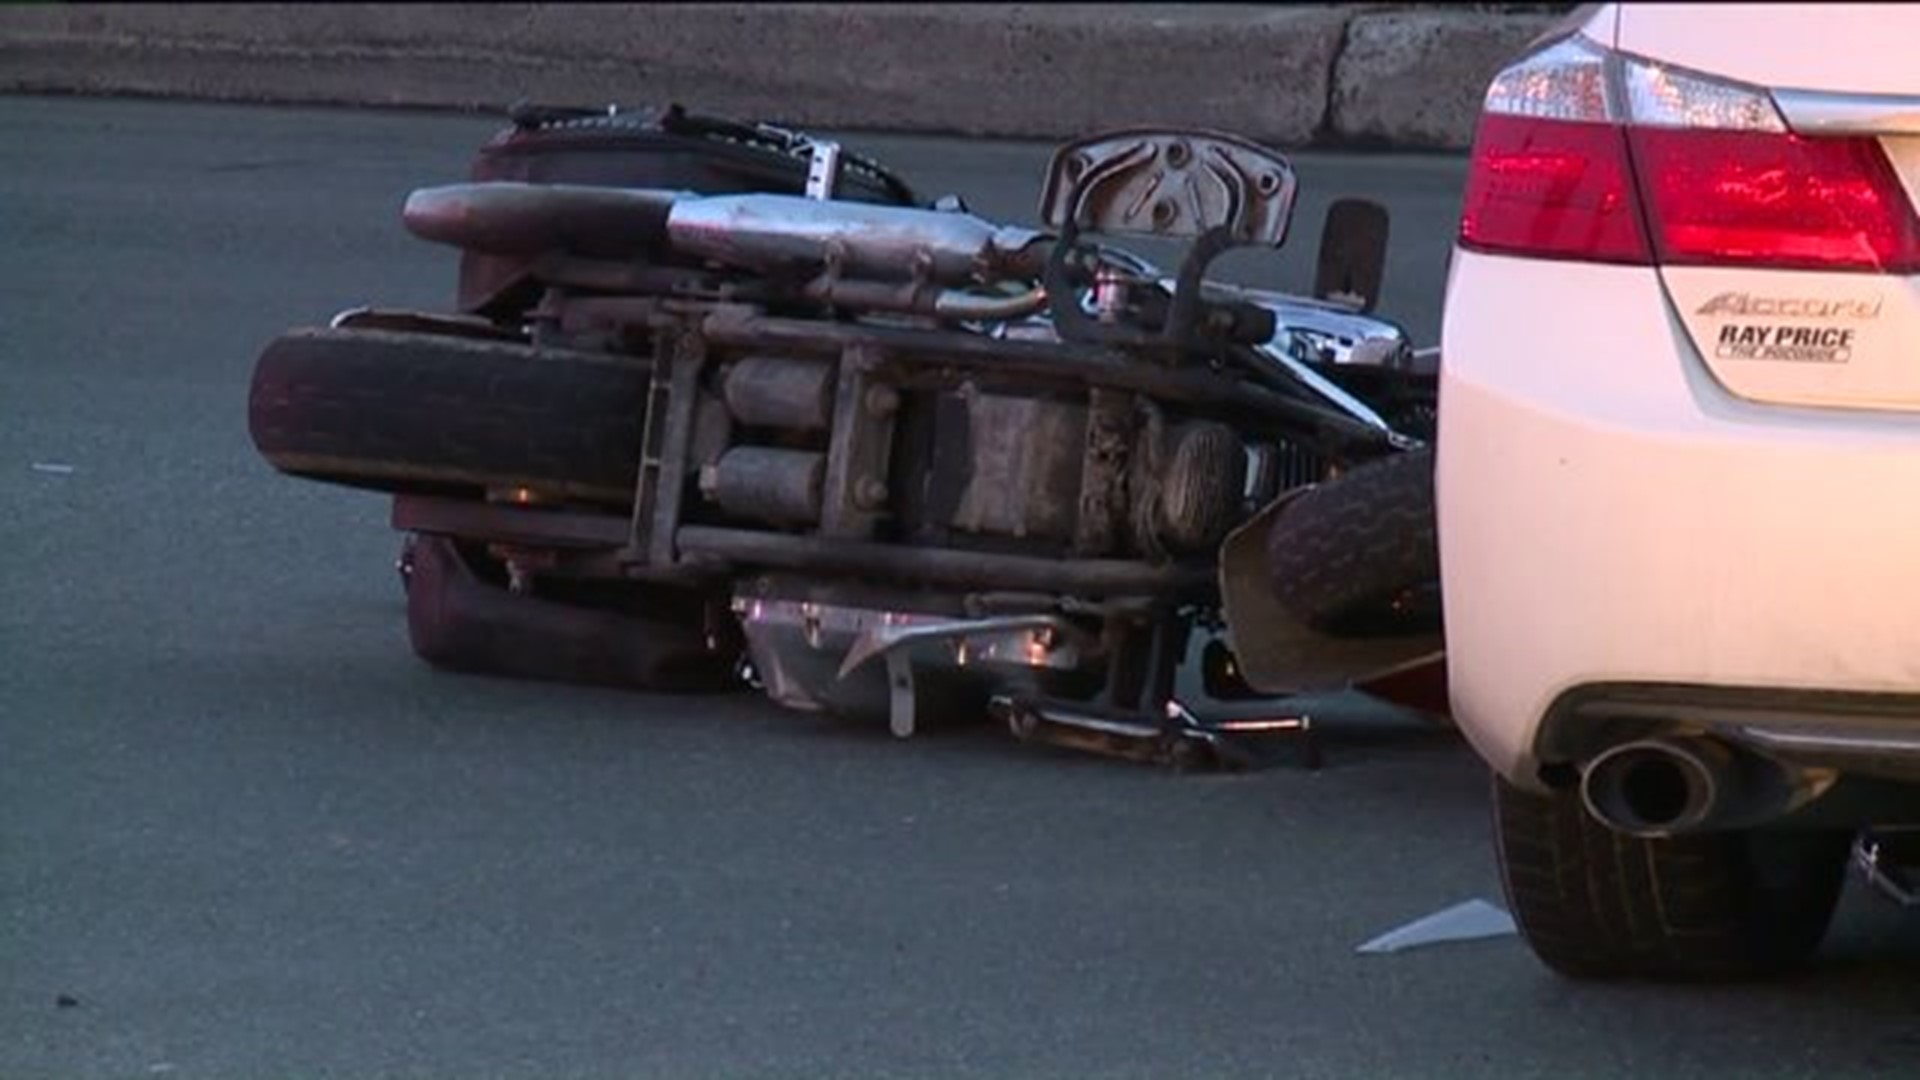 Motorcycle, Car Collide in Poconos